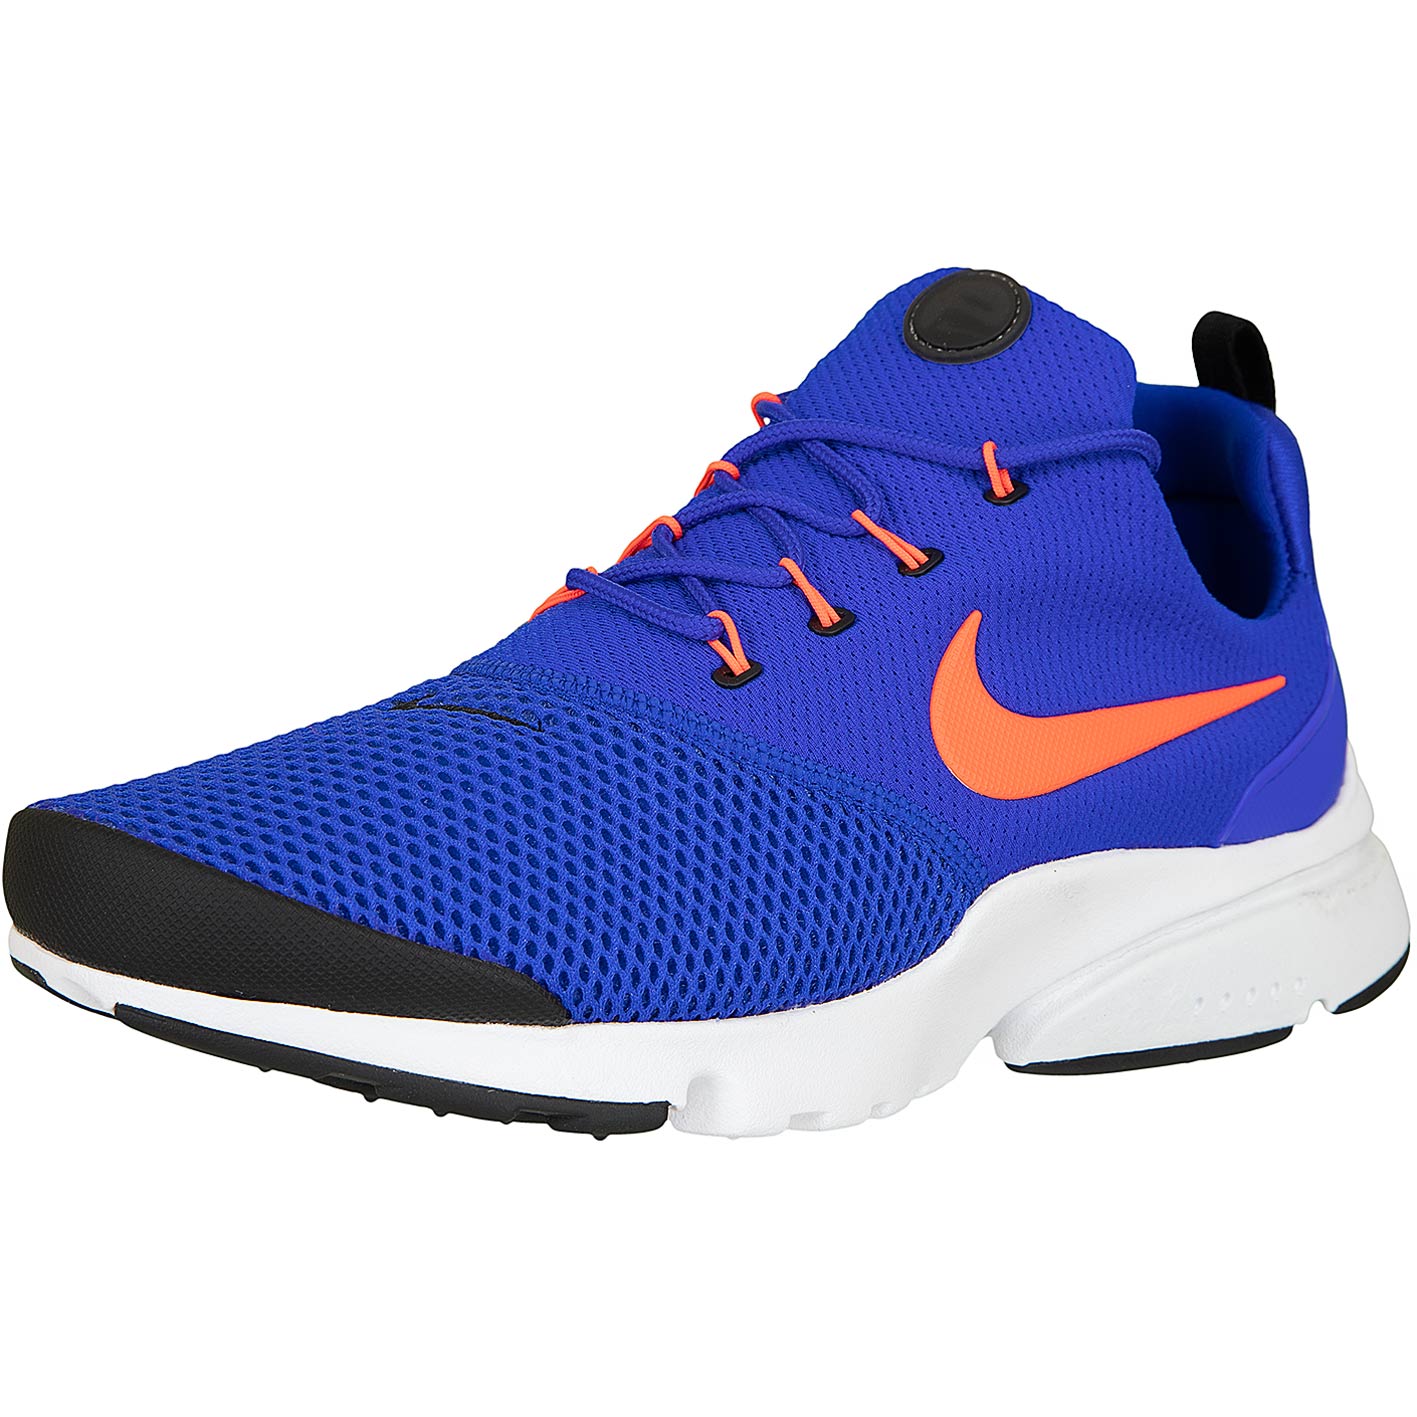 ☆ Nike Sneaker Presto Fly blau/orange - hier bestellen!